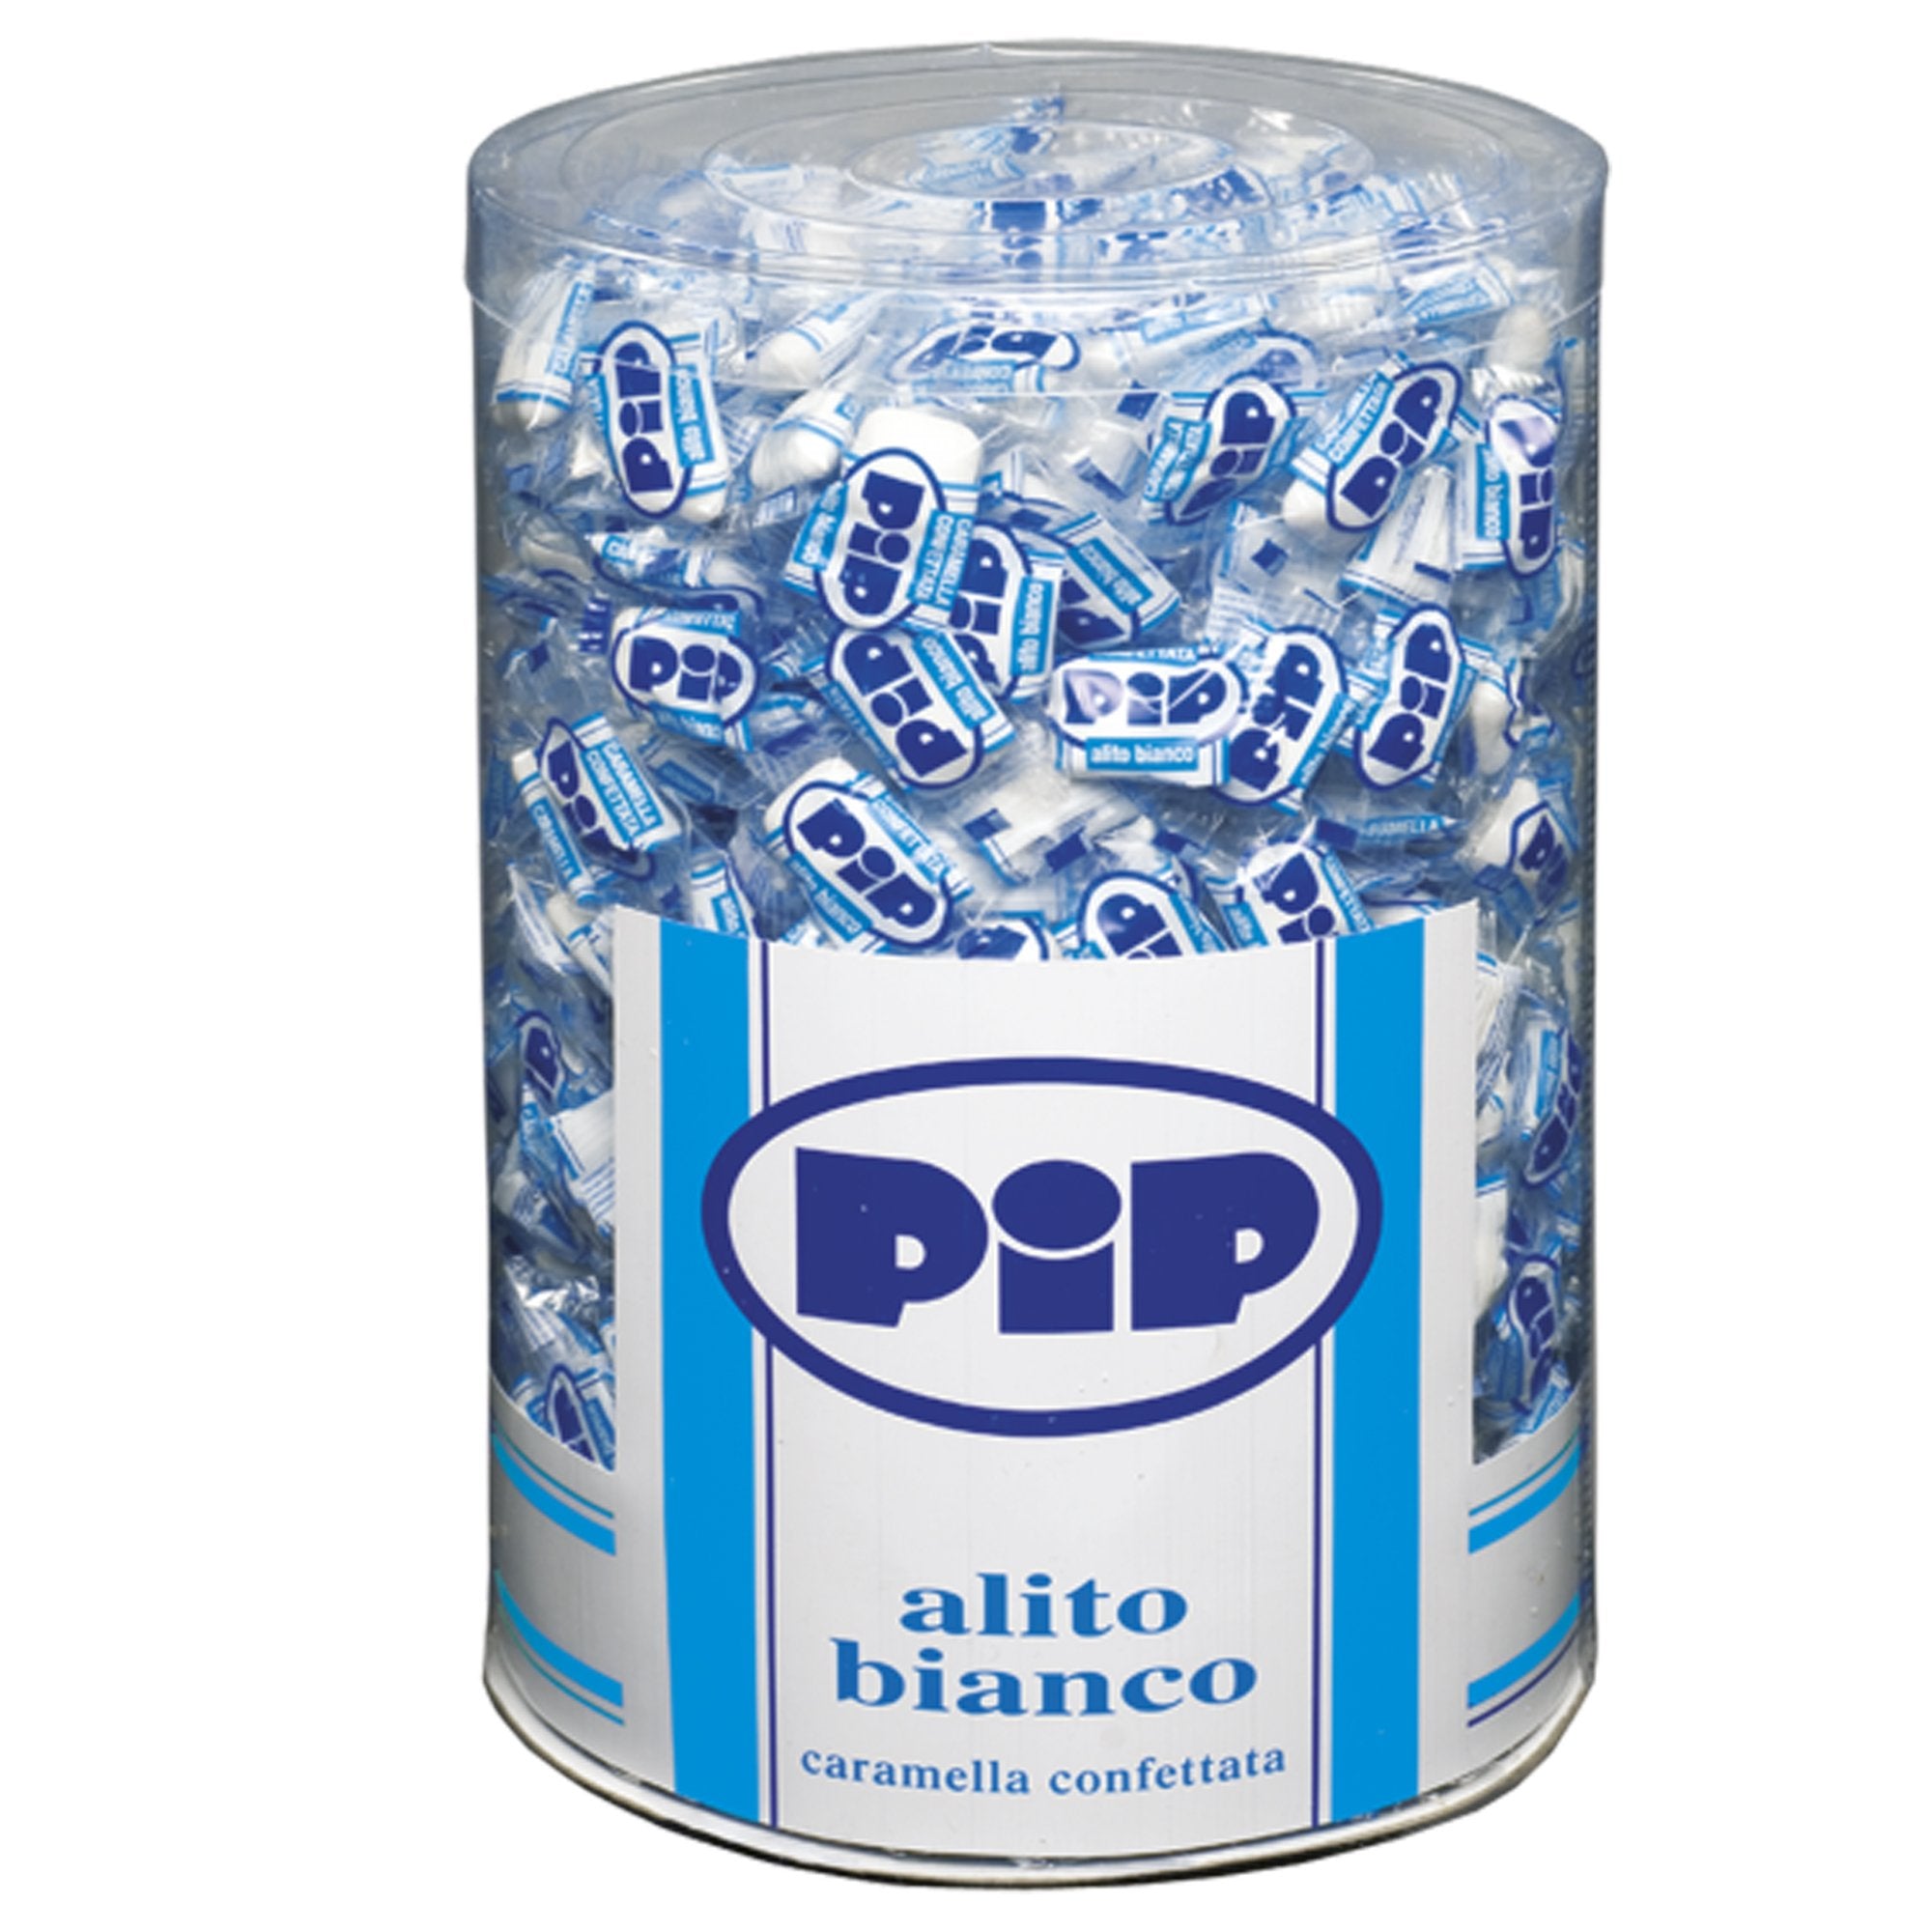 pip-caramelle-confettate-alito-bianco-barattolo-800-pz